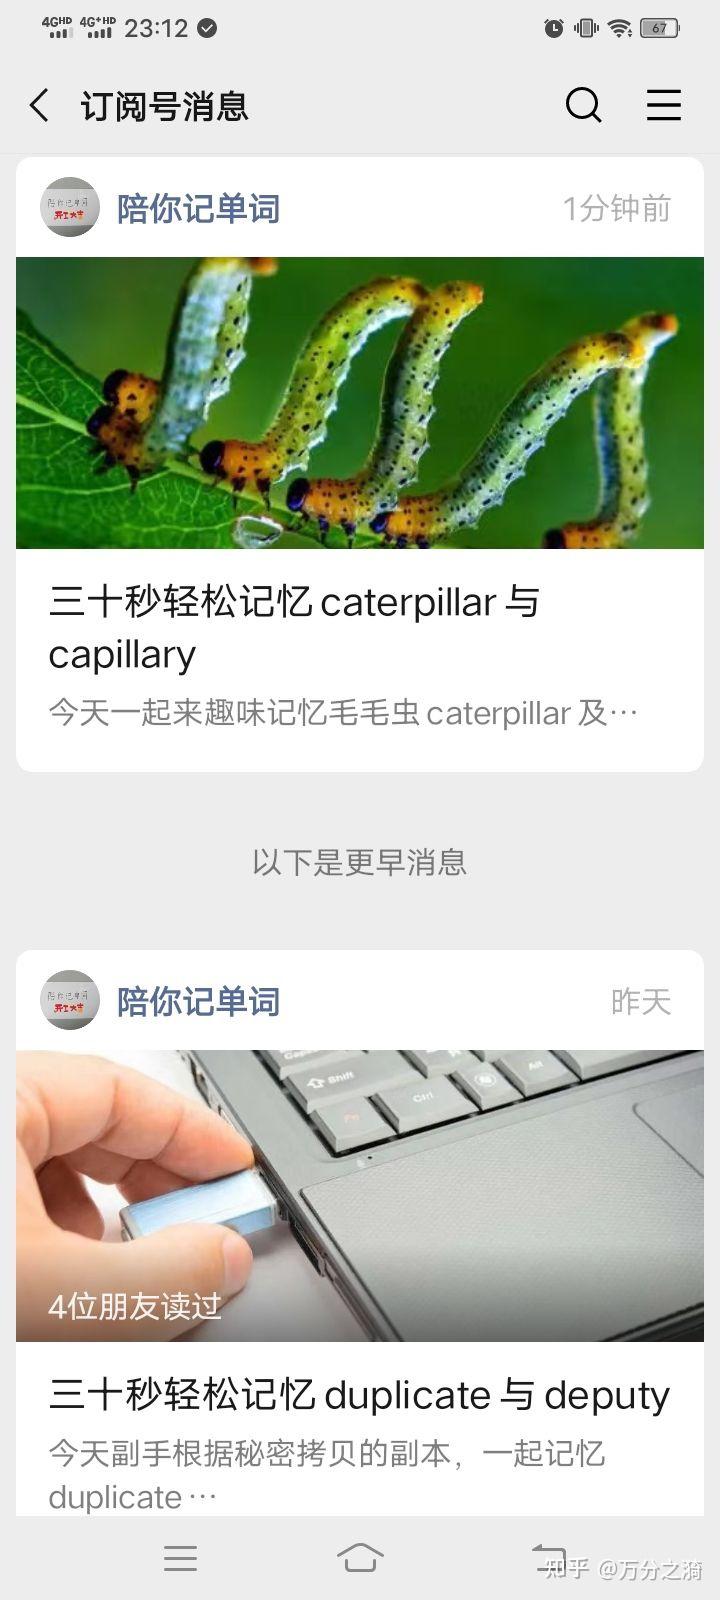 三十秒轻松记忆caterpillar与capillary